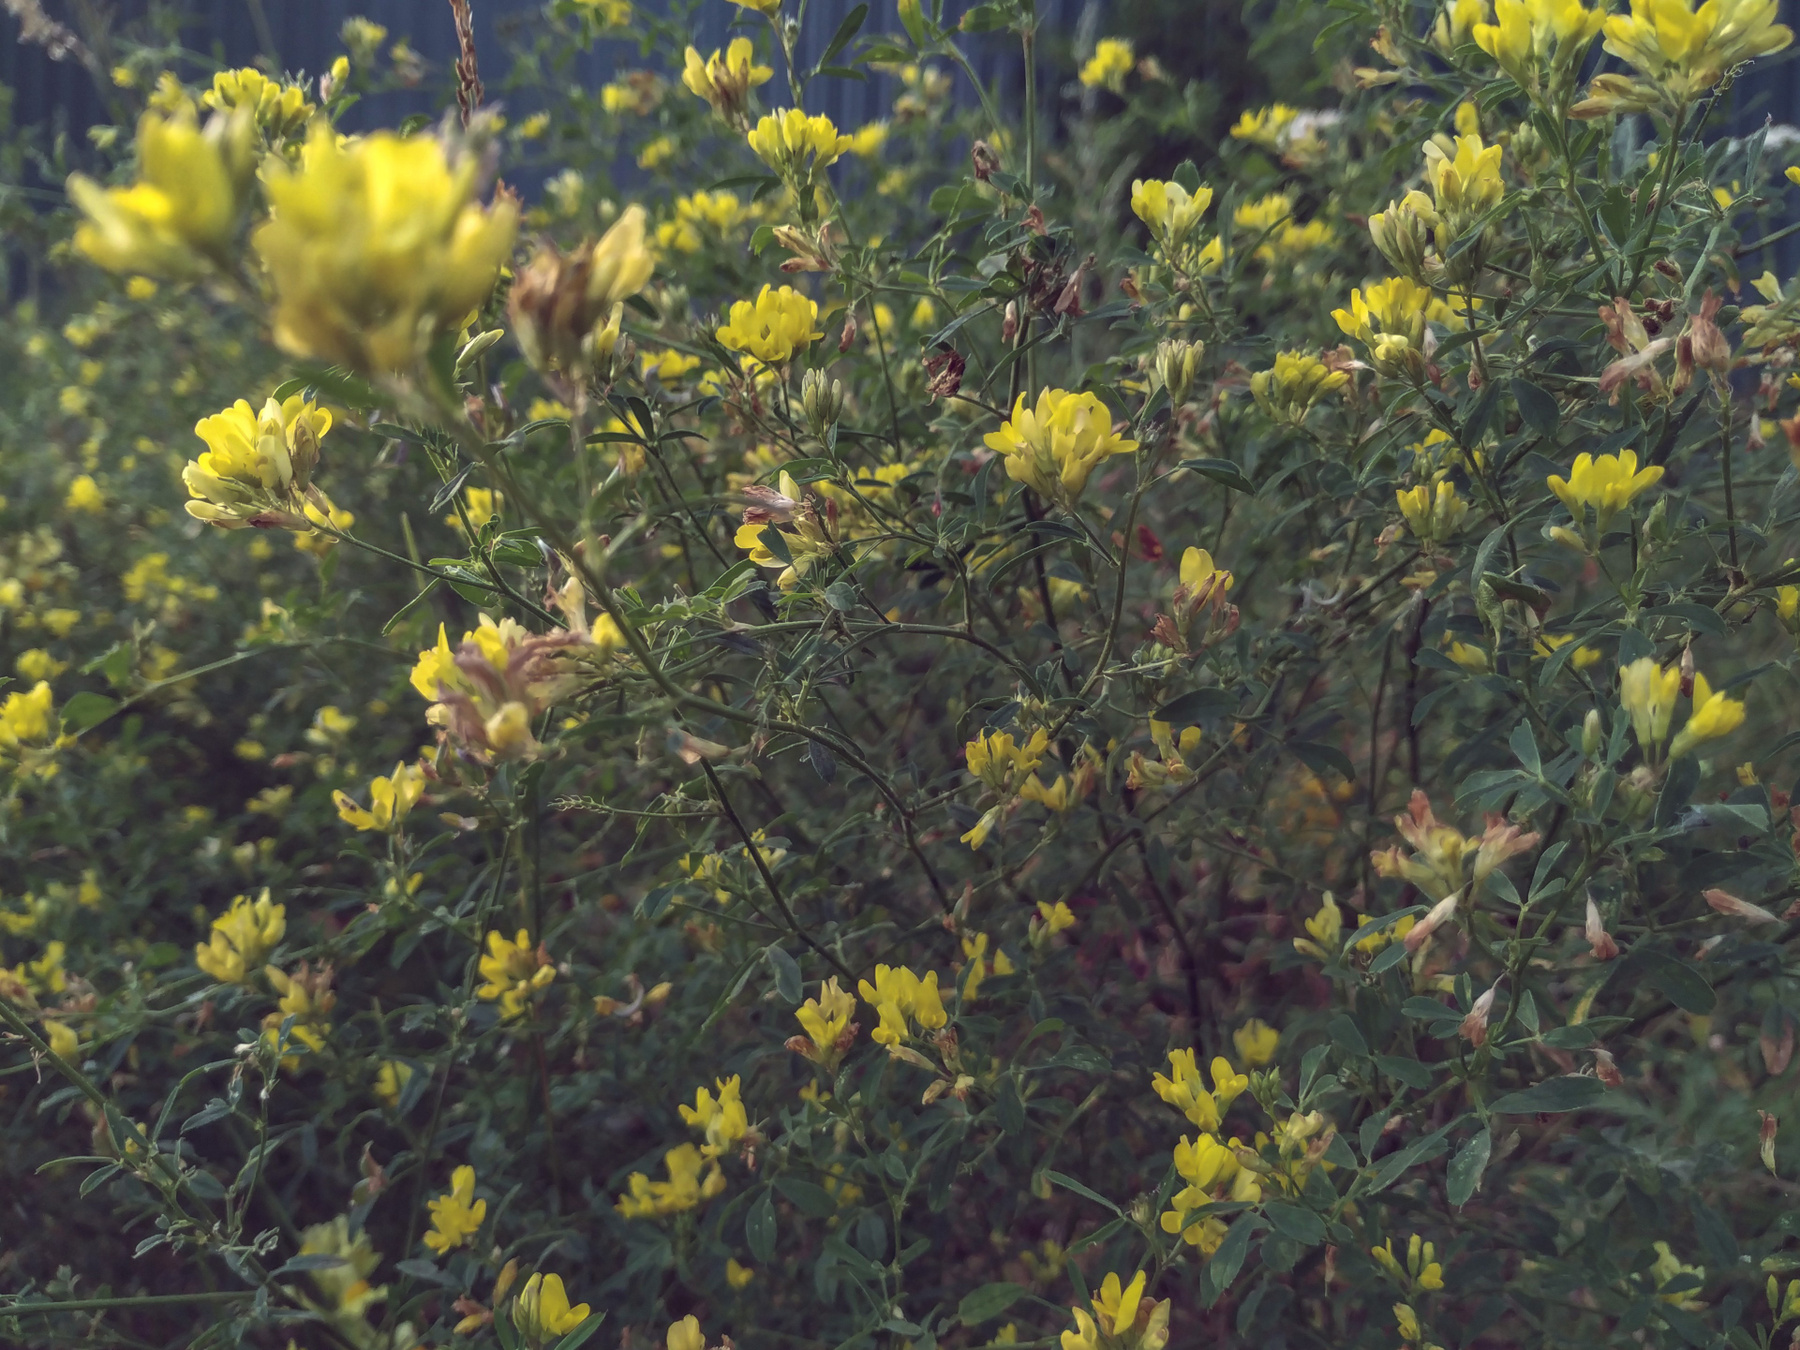 August летний вечер полевые цветы жёлтые лепестки тайна приглушённые цвета драматичный сюжет